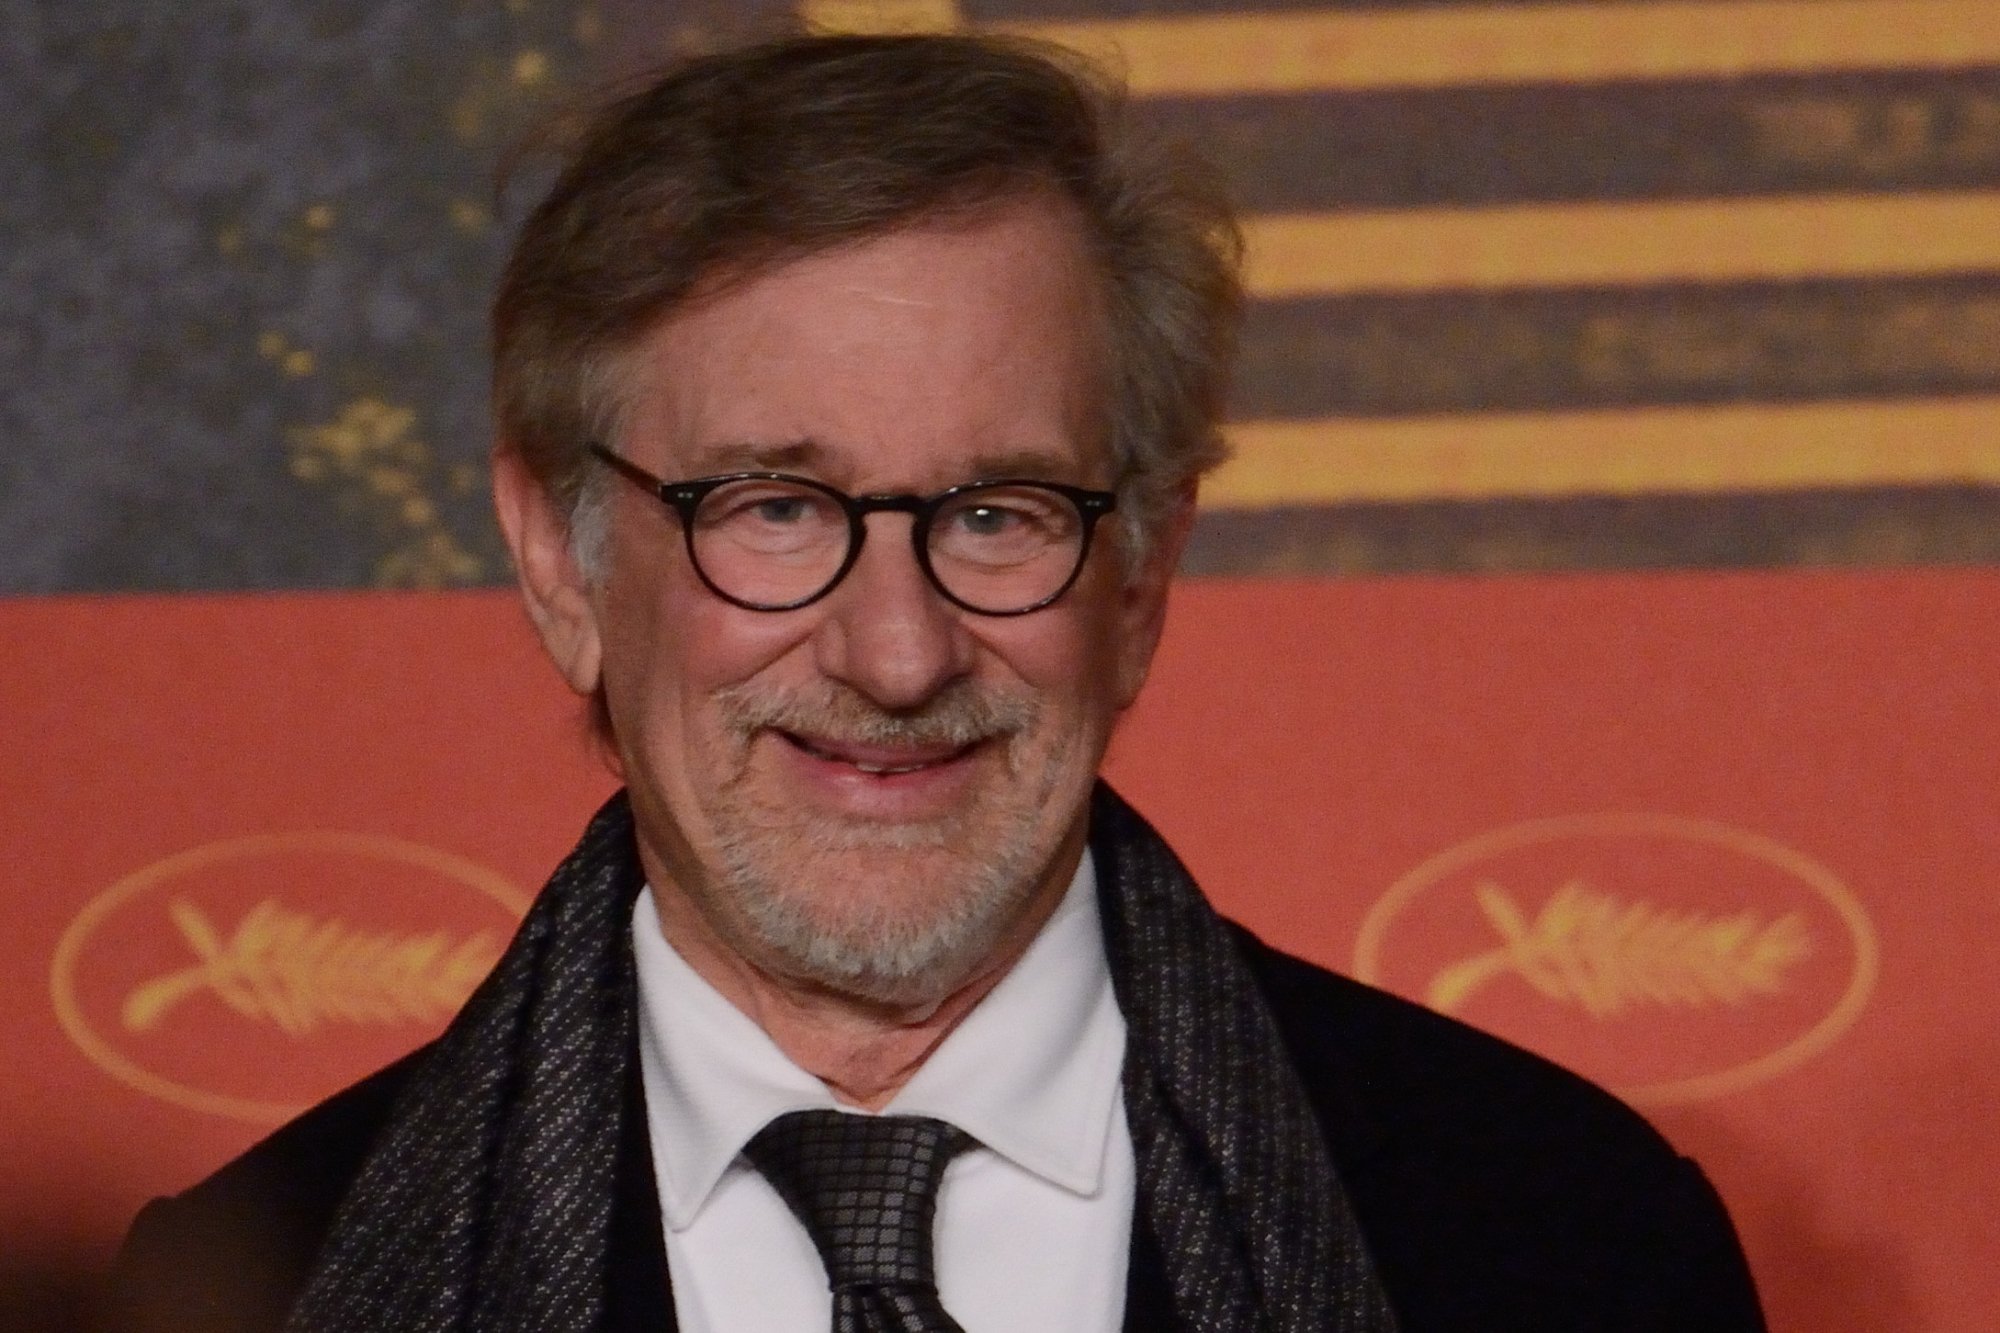 Steven Spielberg lors de la conférence de presse du 